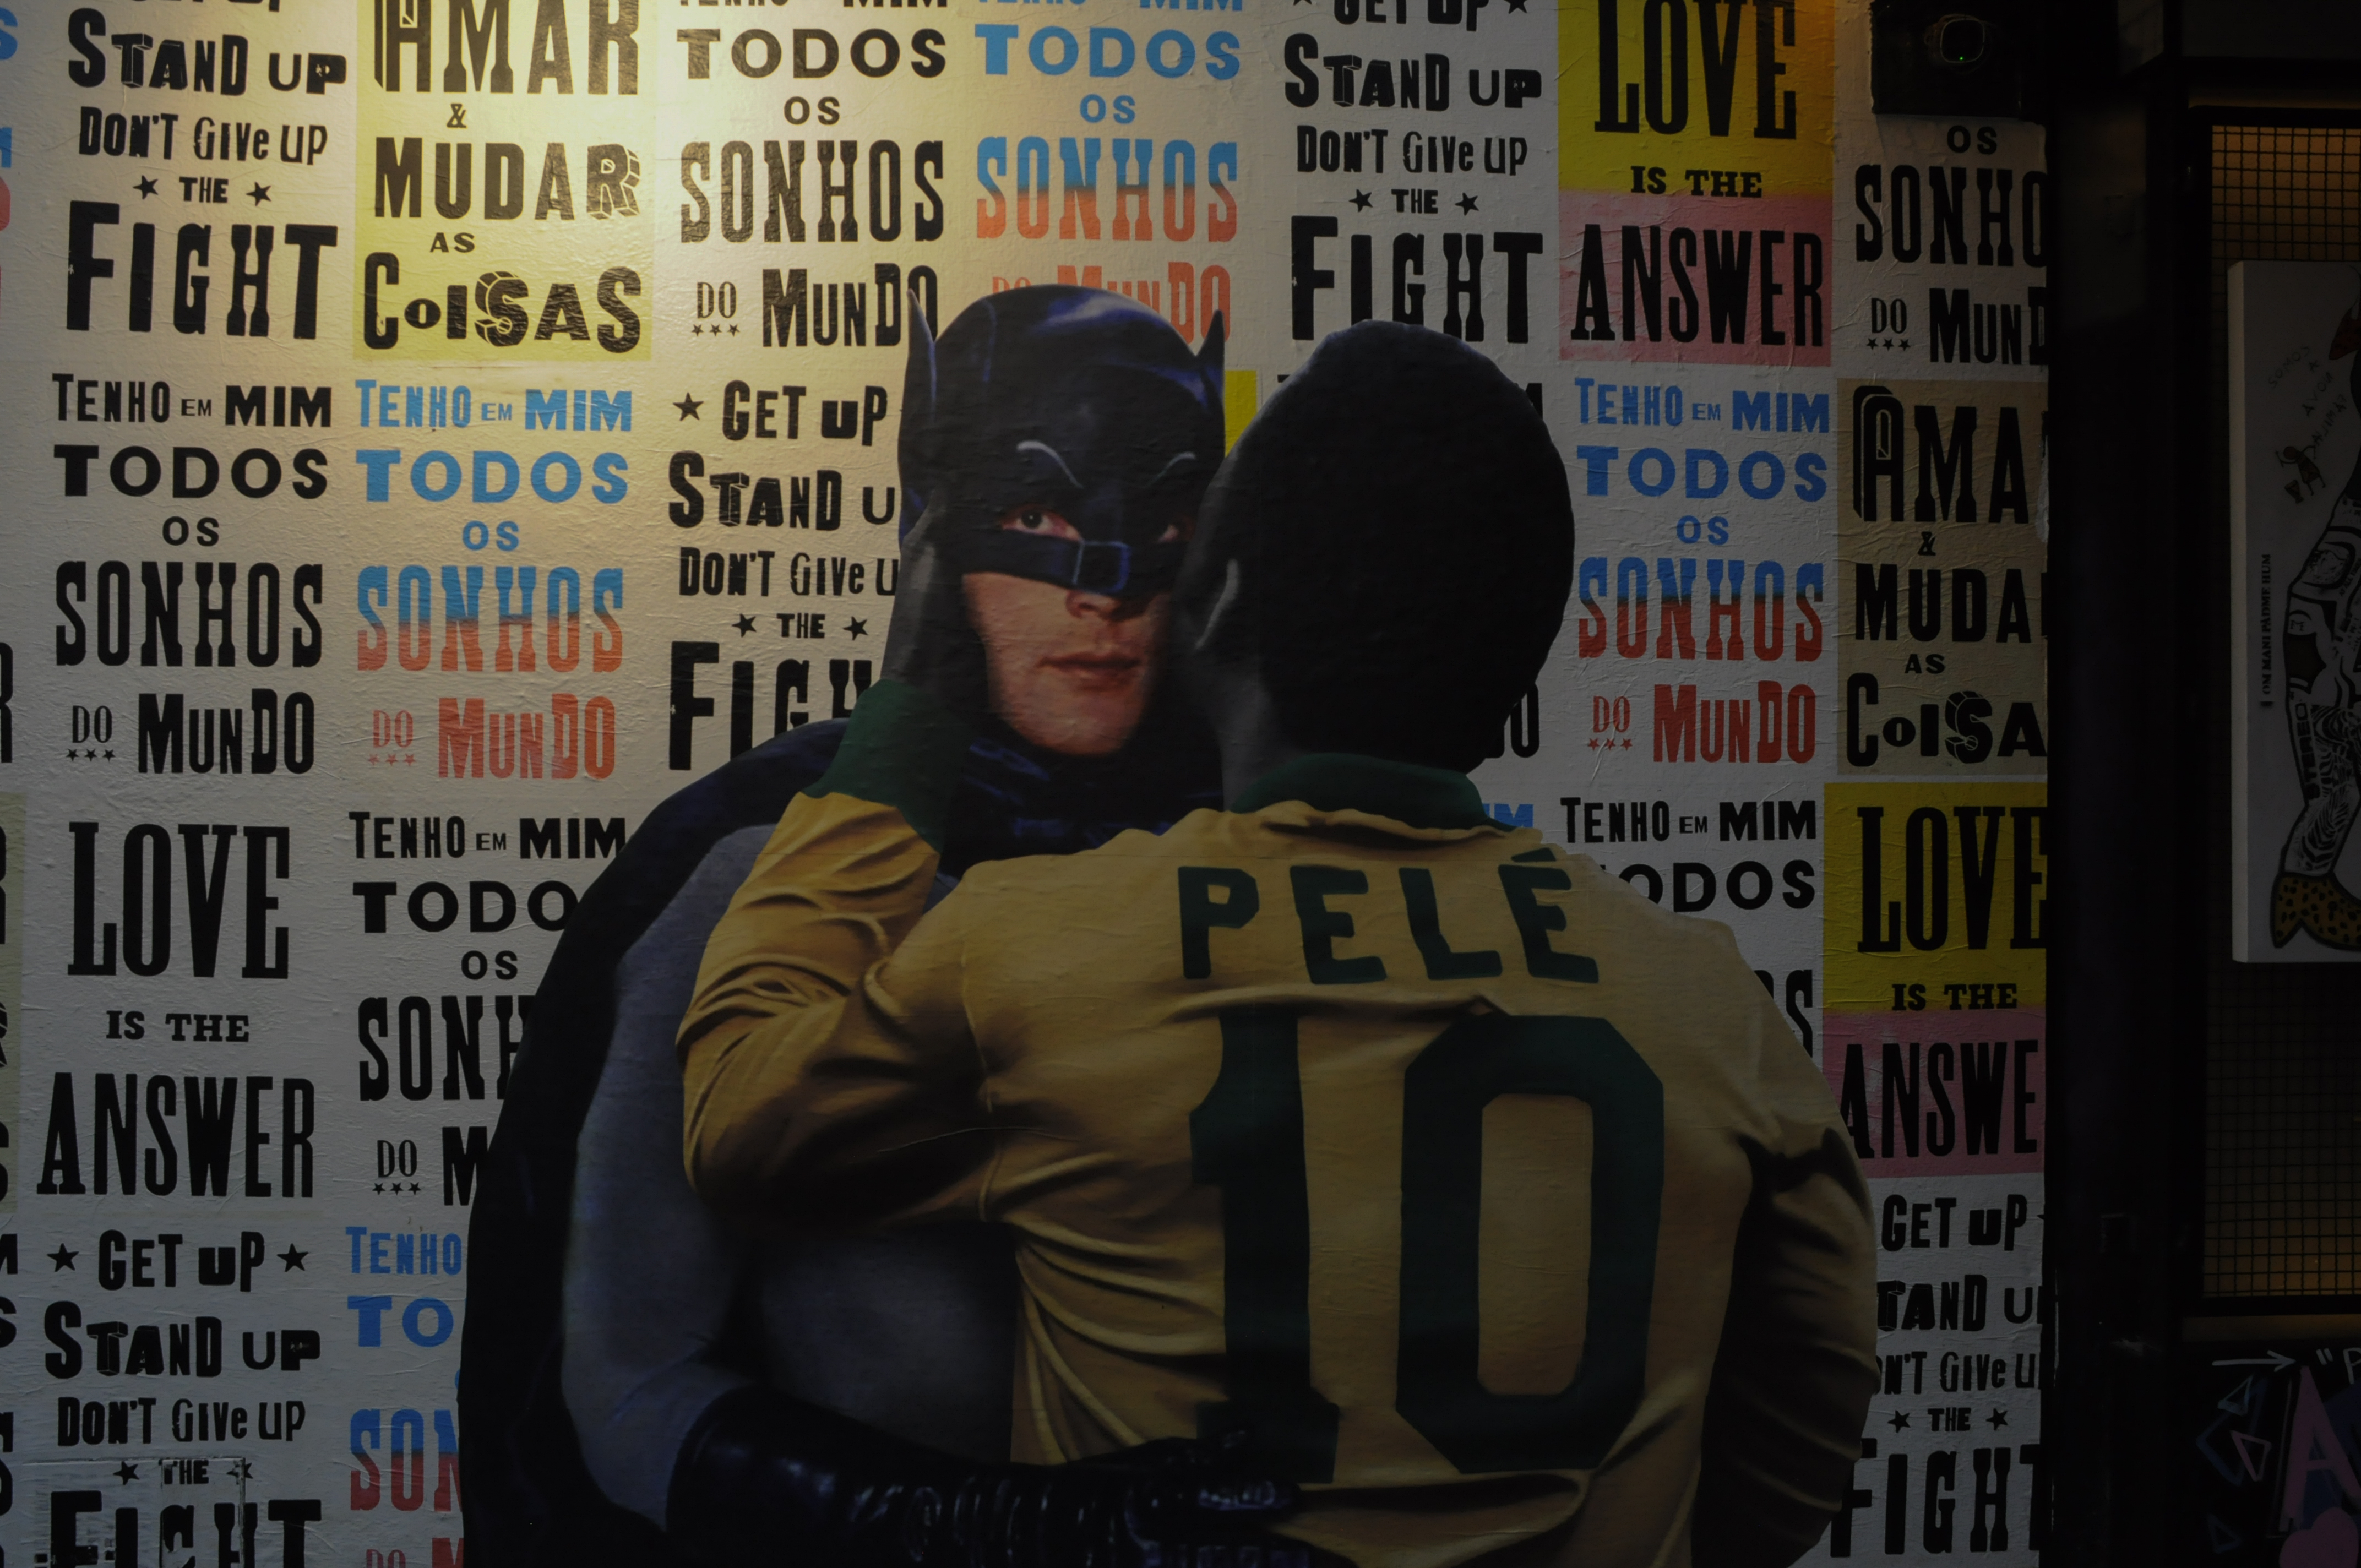 Batman abraçando Pelé